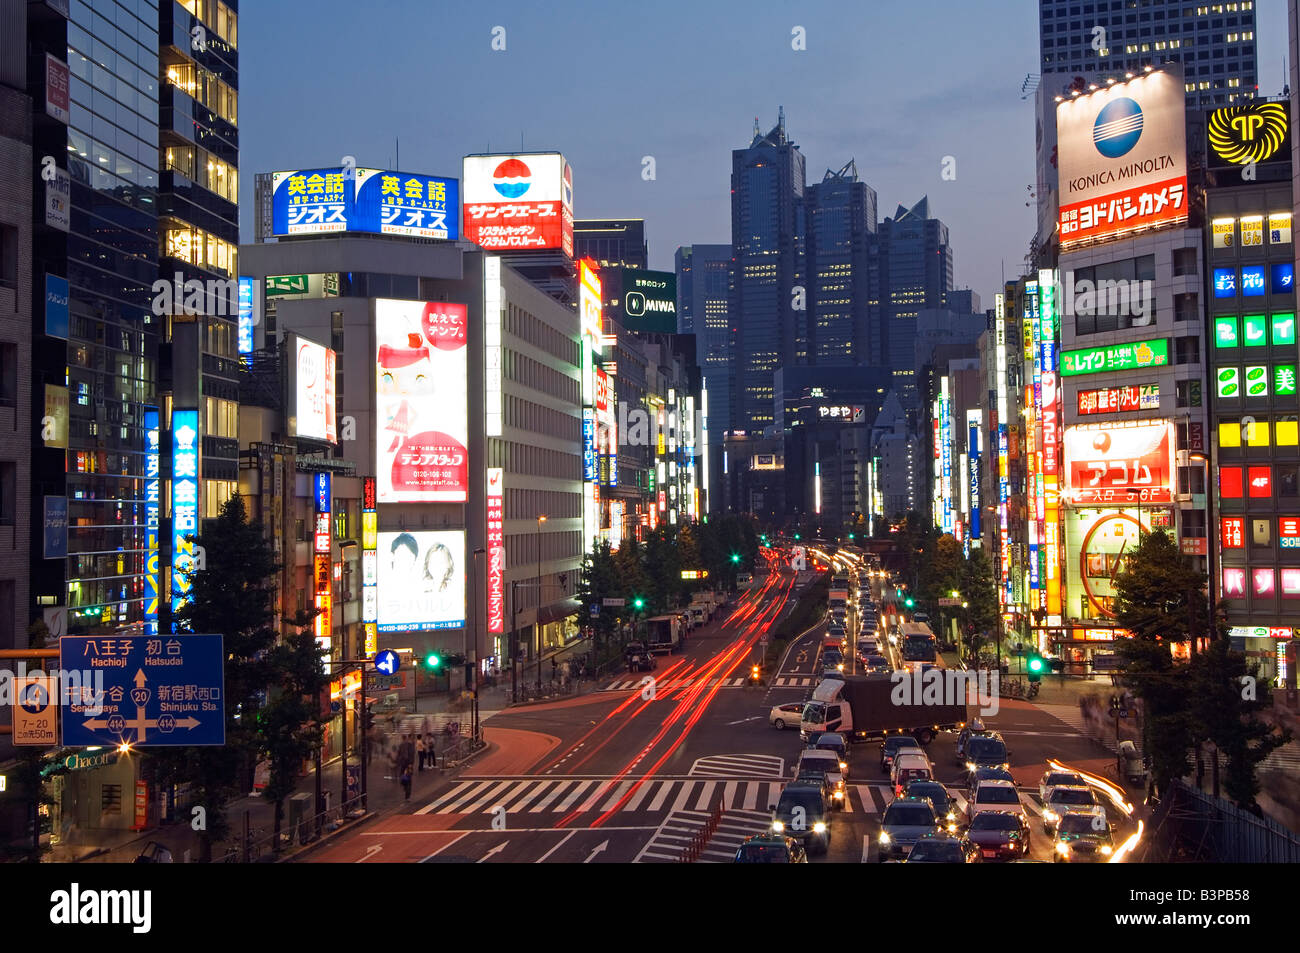 Japon, Tokyo, l'éclairage des rues au néon à l'extérieur de la station de Shinjuku y compris l'hôtel Park Hyatt qui est l'ensemble pour le film Lost in Translation Banque D'Images